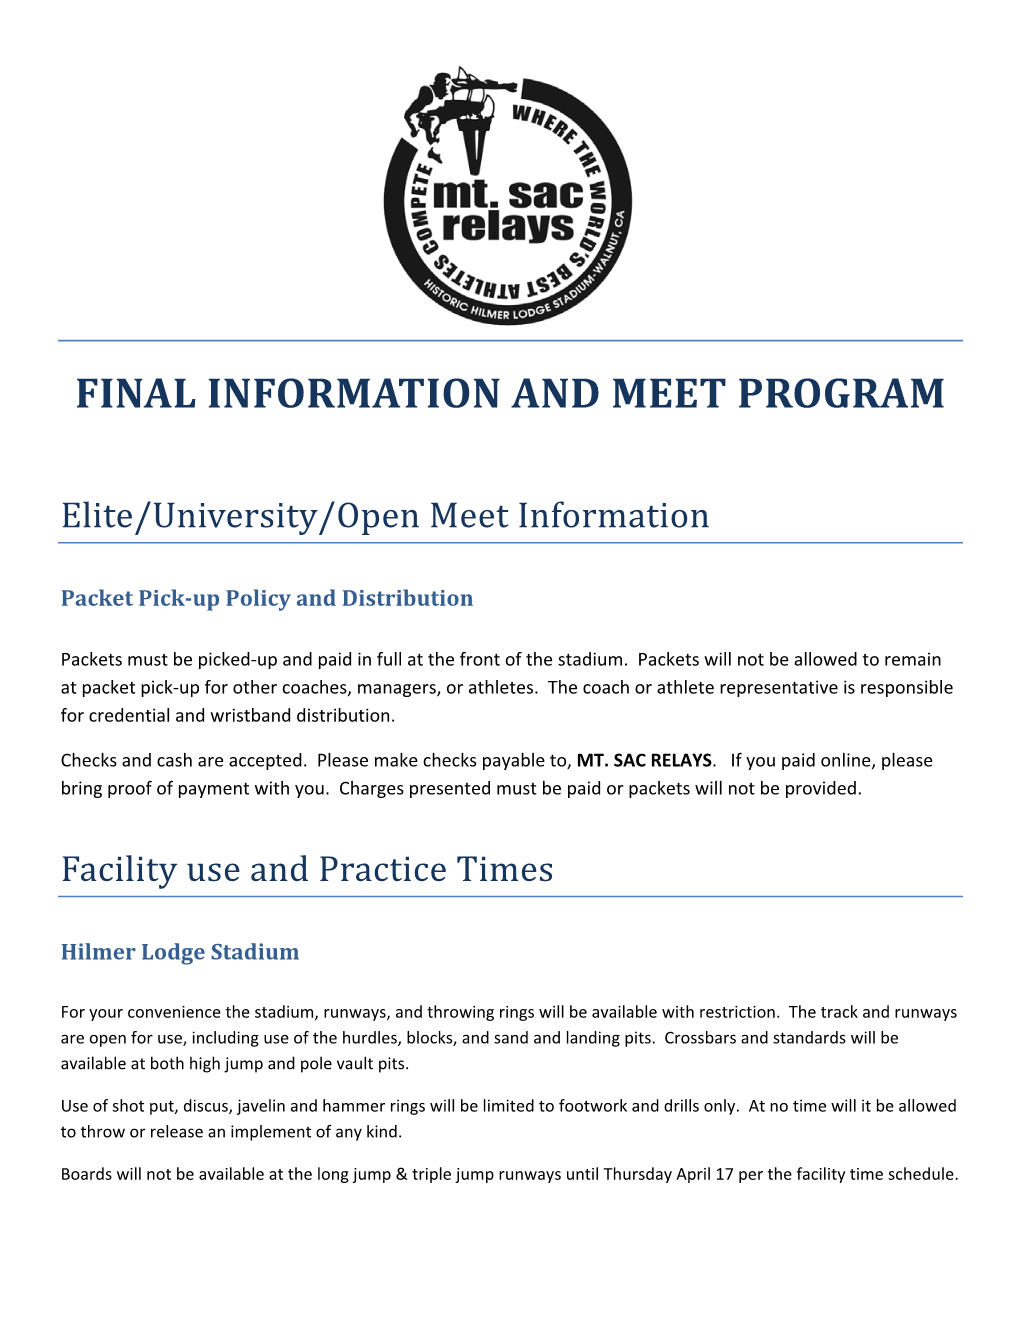 Final Information and Meet Program